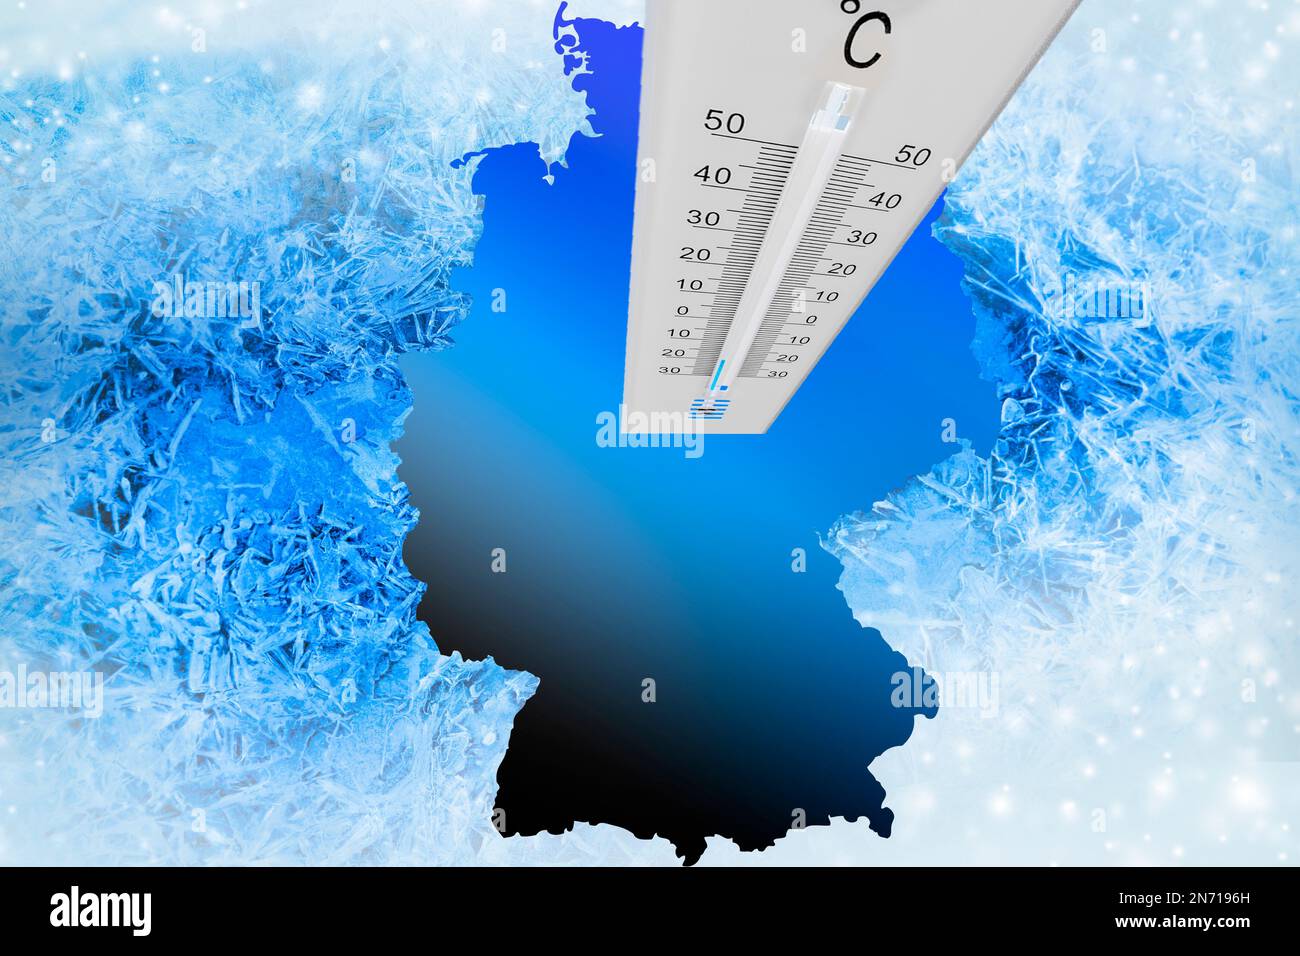 Thermomètre avec affichage de la température, glace, froid, carte de l'Allemagne Banque D'Images